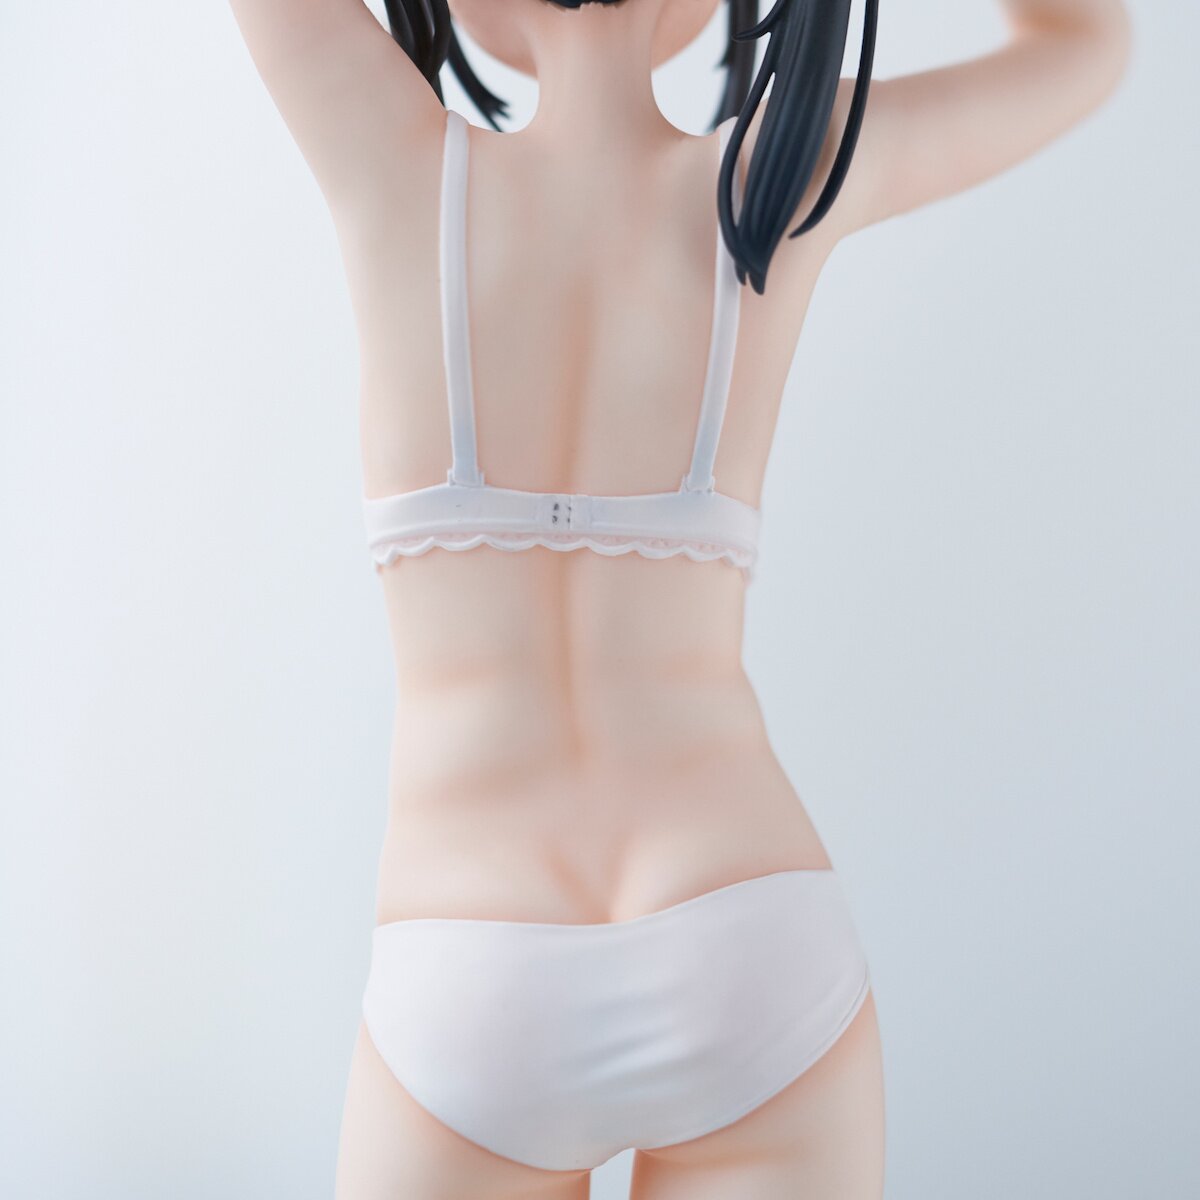 The Most NSFW SFW Image (panties ver.), Sailor Fuku